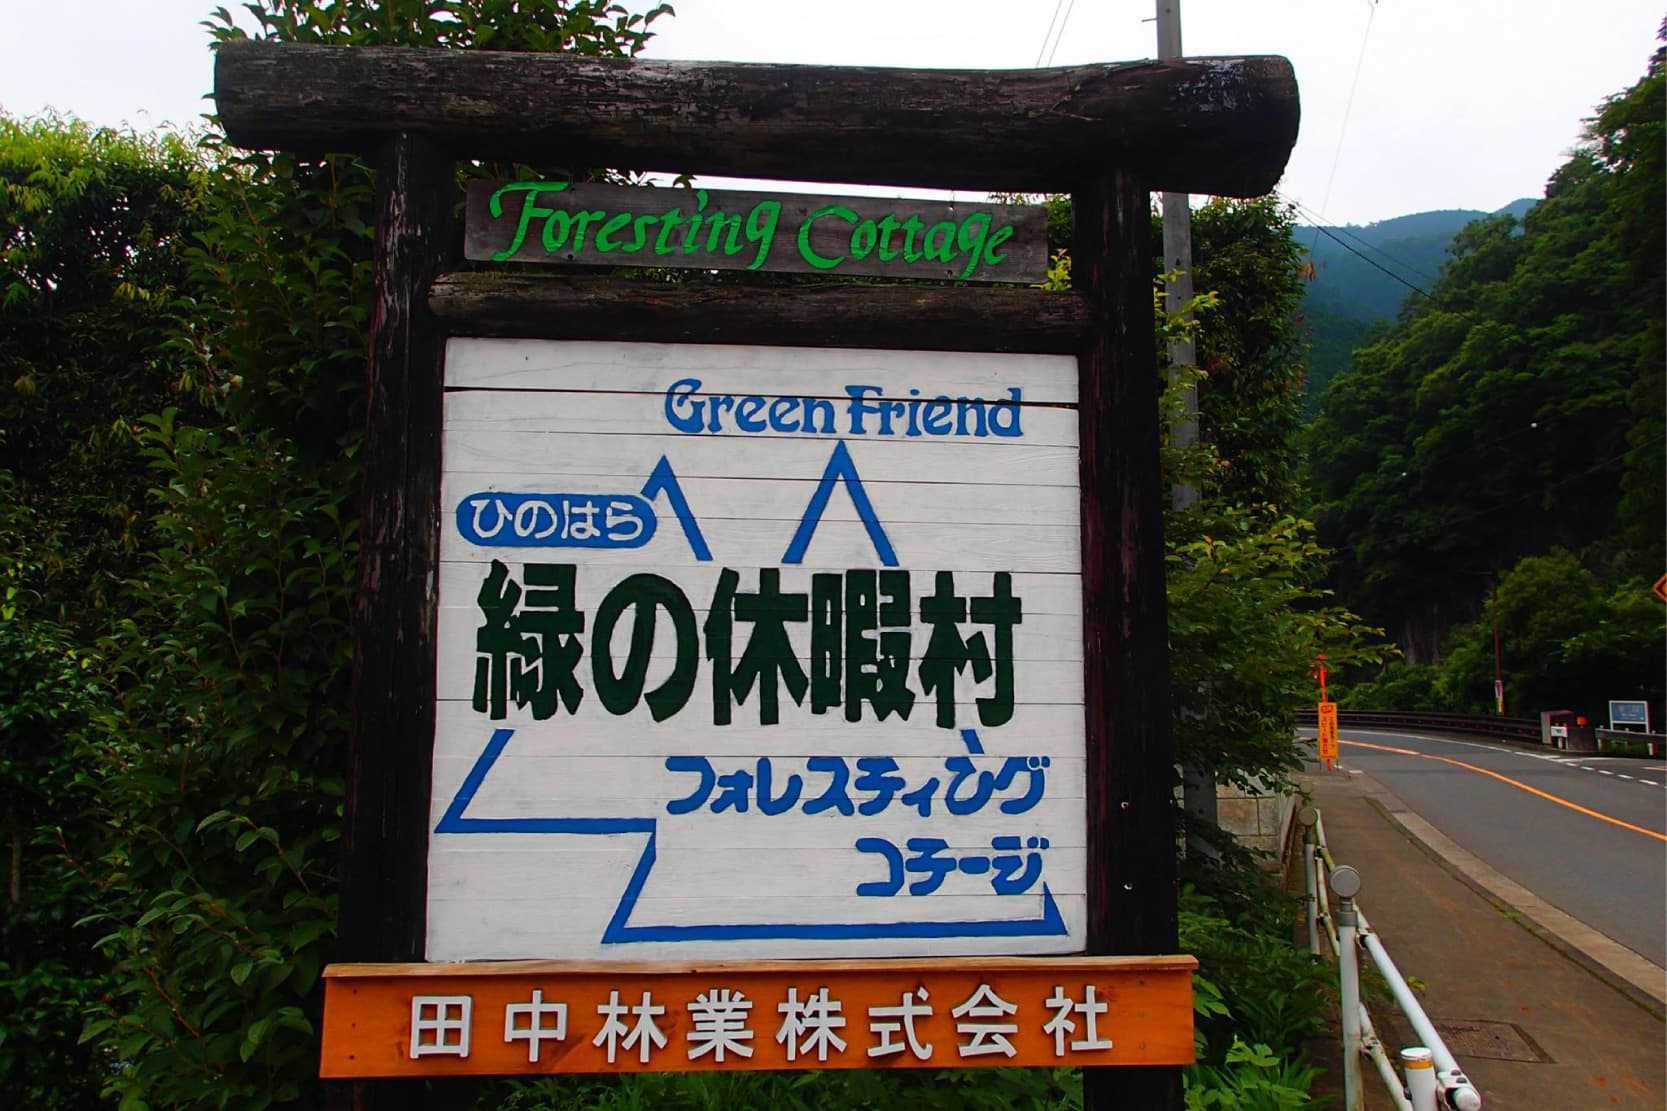 田中林業のフォレスティングコテージ